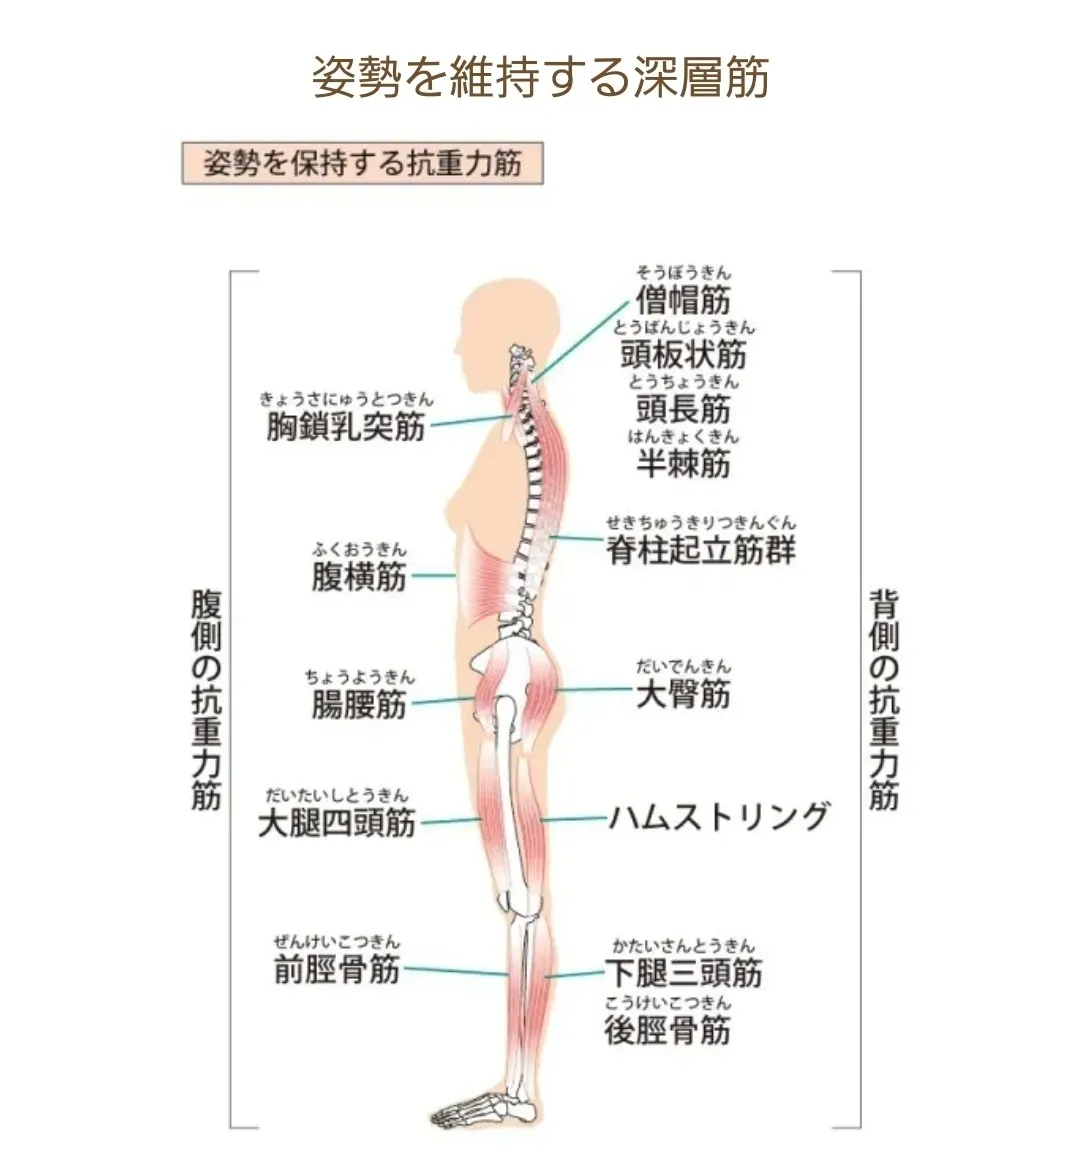 【腰痛】腰を守っている筋肉・姿勢